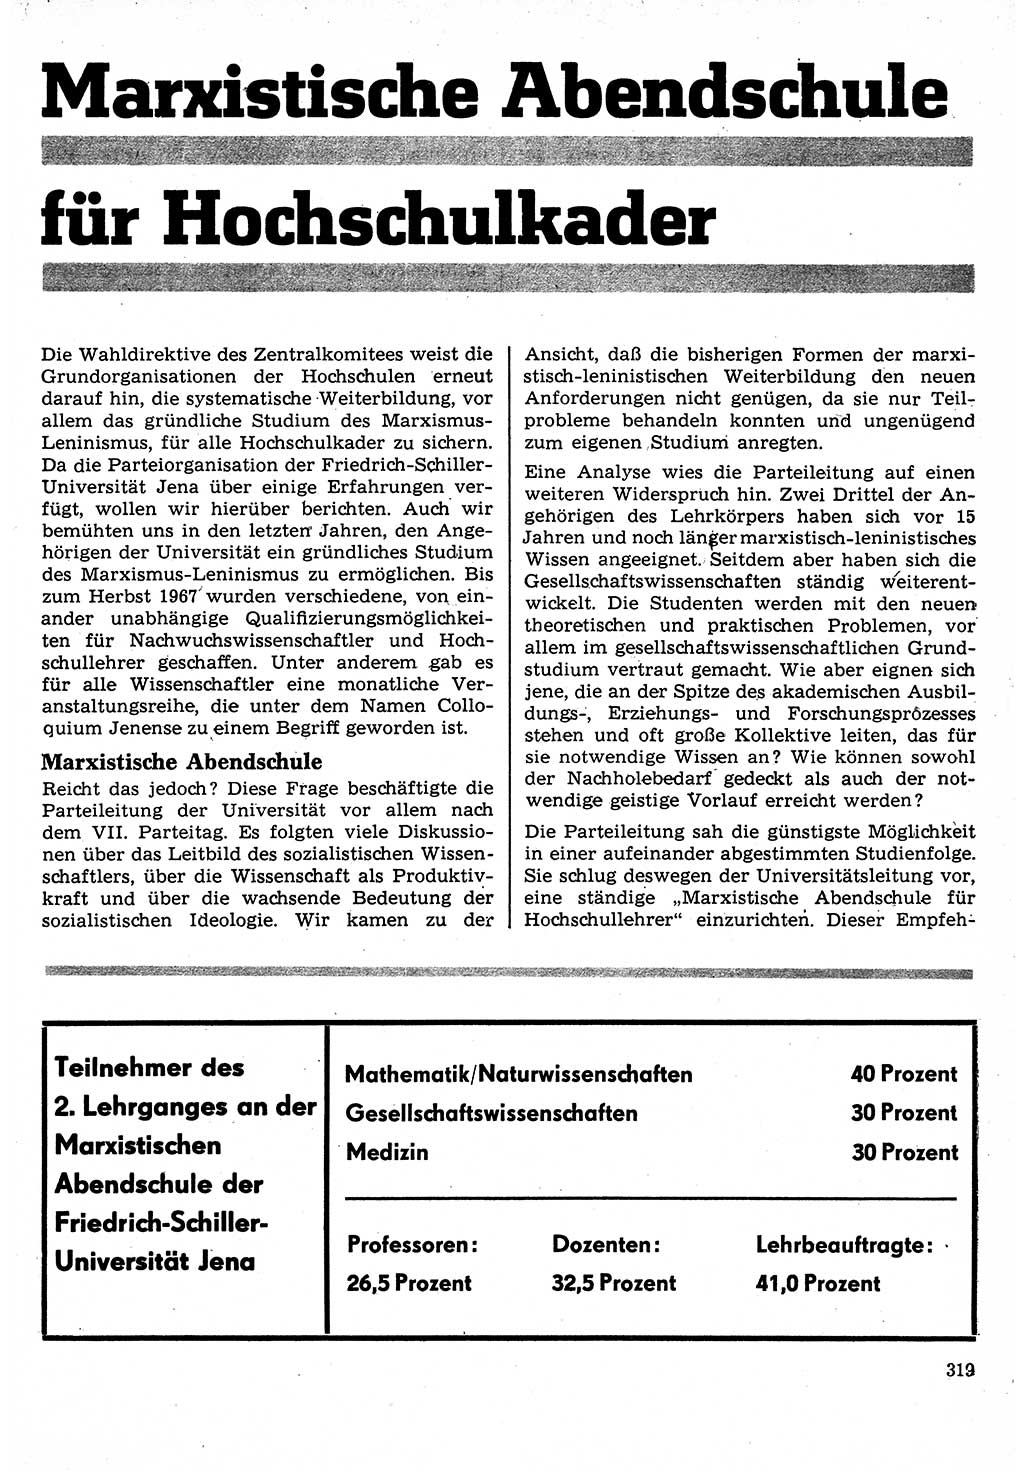 Neuer Weg (NW), Organ des Zentralkomitees (ZK) der SED (Sozialistische Einheitspartei Deutschlands) für Fragen des Parteilebens, 24. Jahrgang [Deutsche Demokratische Republik (DDR)] 1969, Seite 319 (NW ZK SED DDR 1969, S. 319)